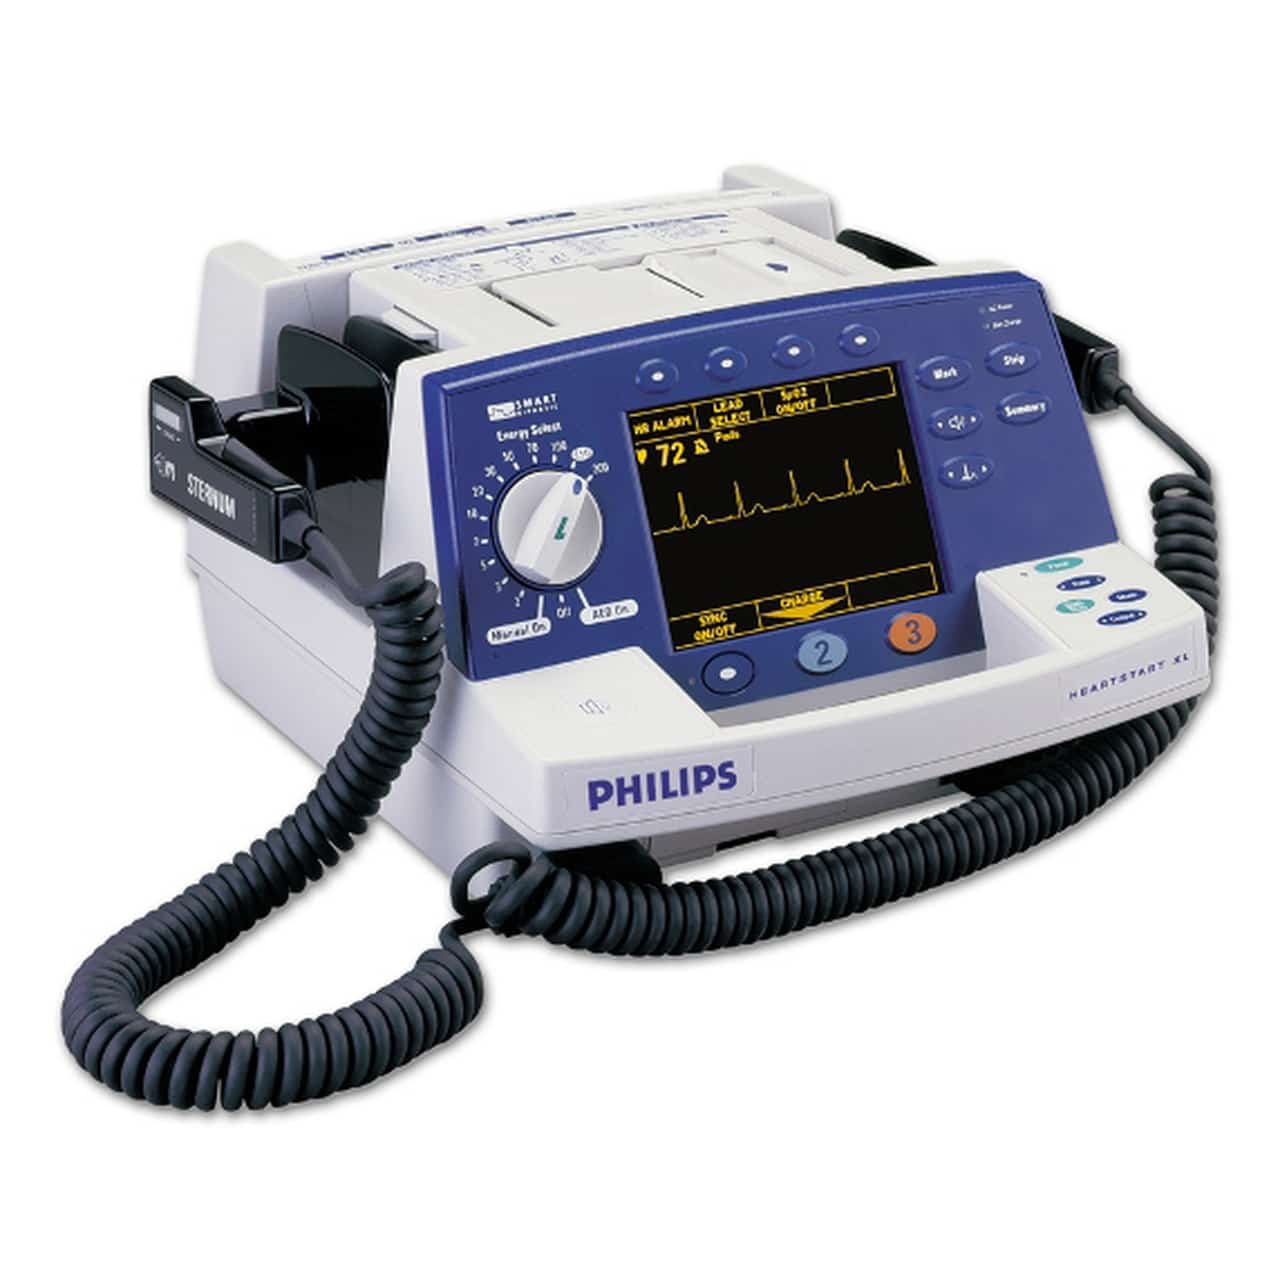 Что такое дефибриллятор. Дефибриллятор Philips HEARTSTART. Дефибриллятор Philips HEARTSTART XL m4735a. Philips HEARTSTART XL. Дефибриллятор ДКИ-Н-11 С монитором: ЭКГ, spo2, НИАД.